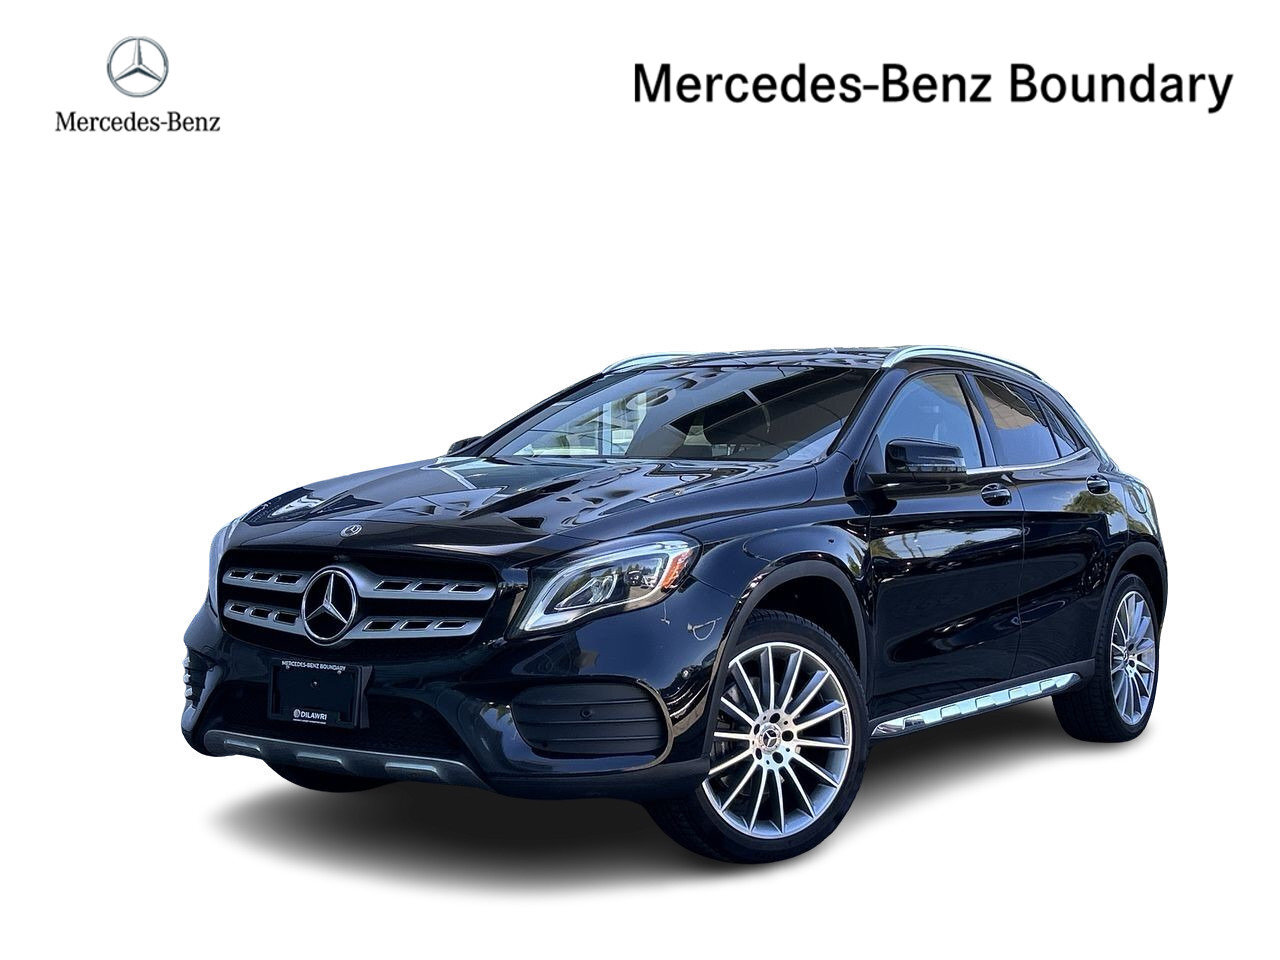 2018 Mercedes-Benz GLA250 4MATIC SUV Premium Package, Premium Plus Package, 